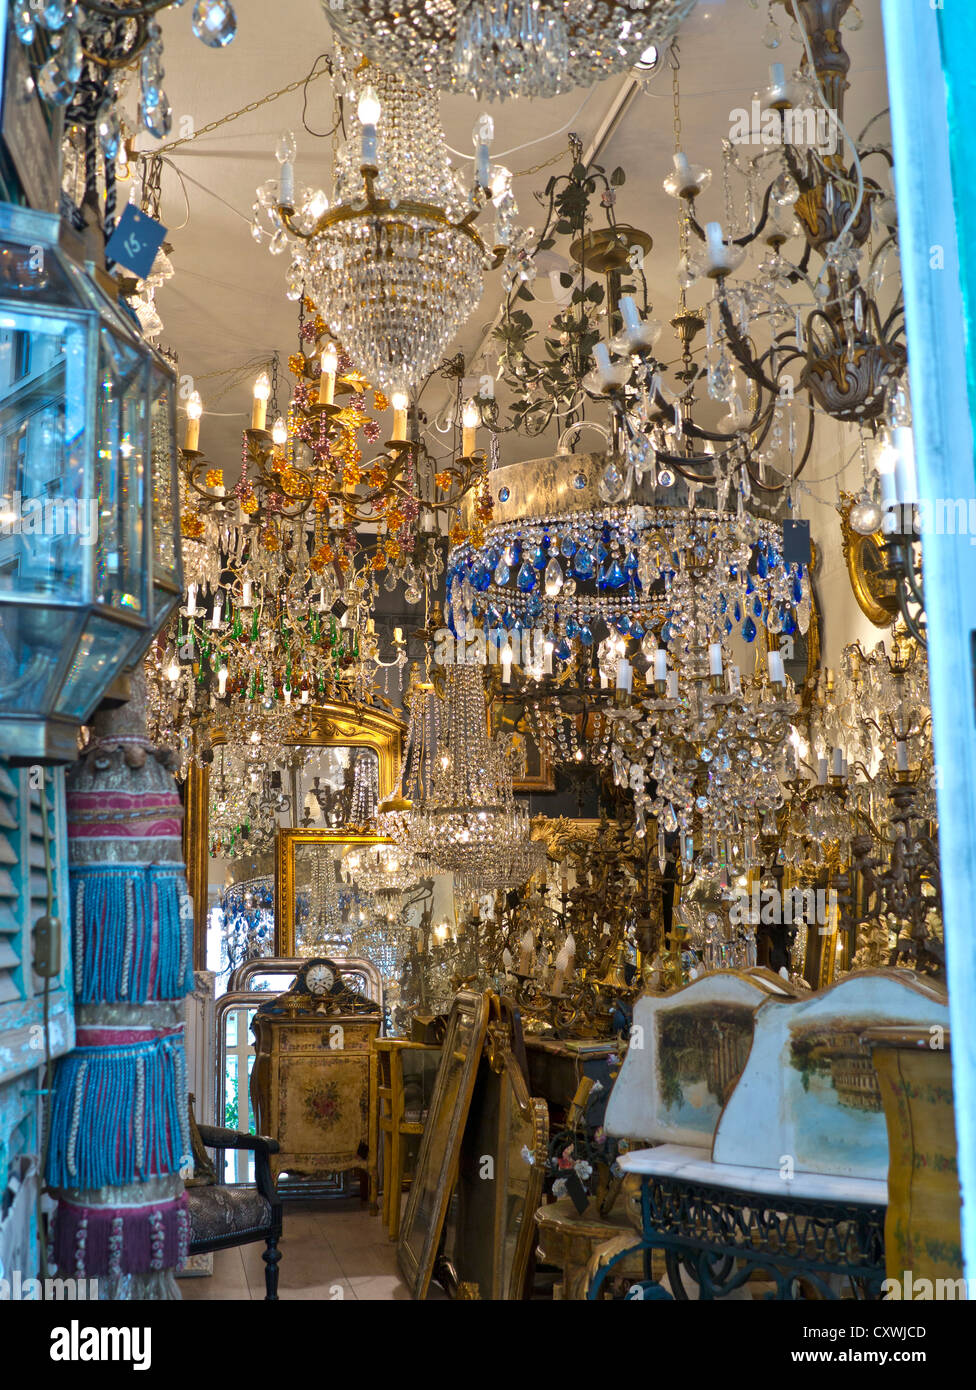 Cristal ancien au bord d'une boutique de brac avec une variété de vieux chandeliers en cristal exposés à la vente Banque D'Images